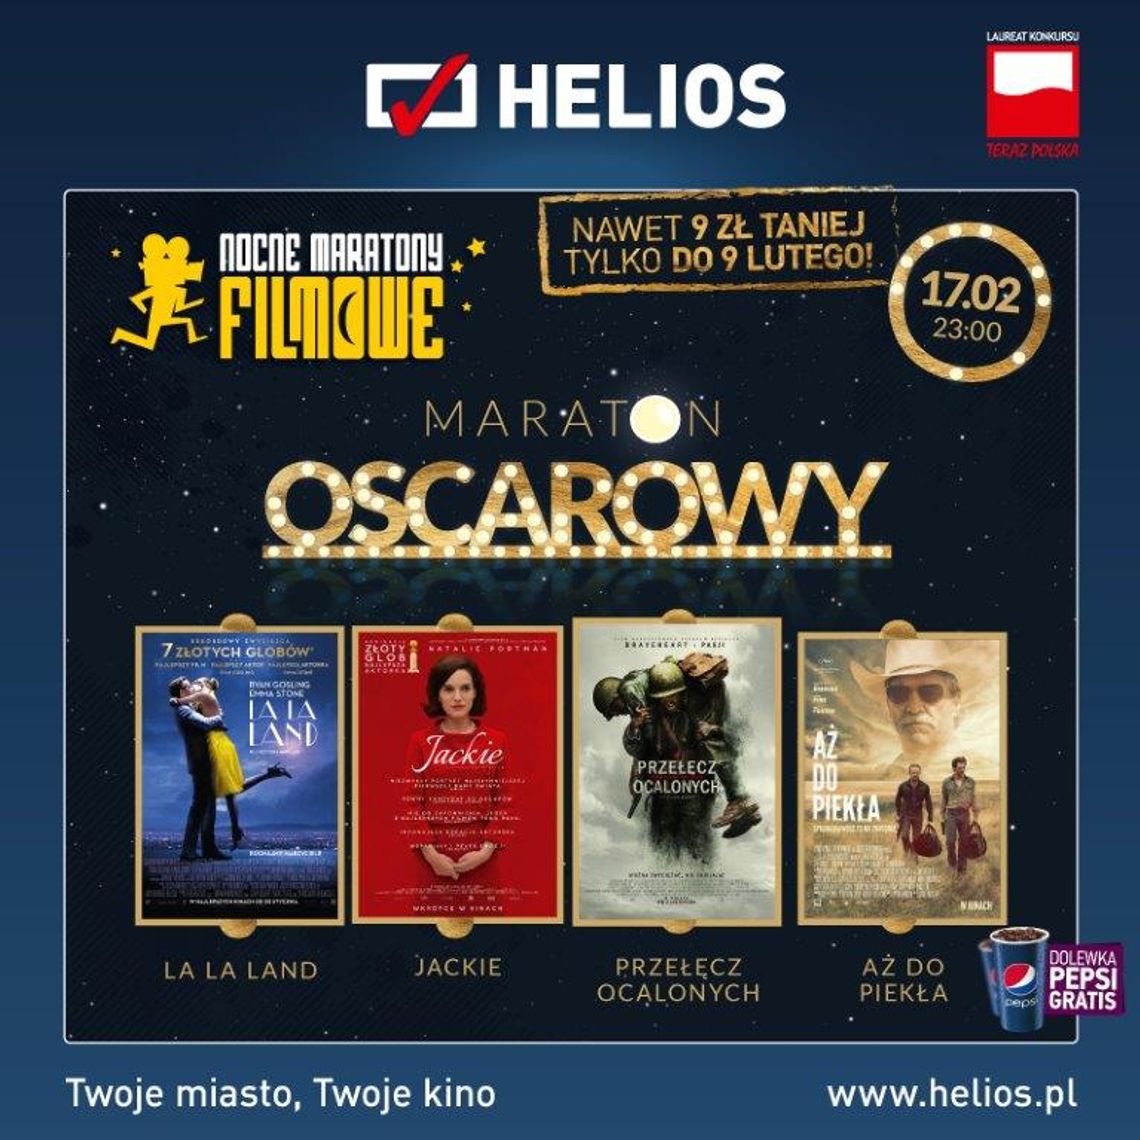 Maraton Oscarowy w kinie Helios 